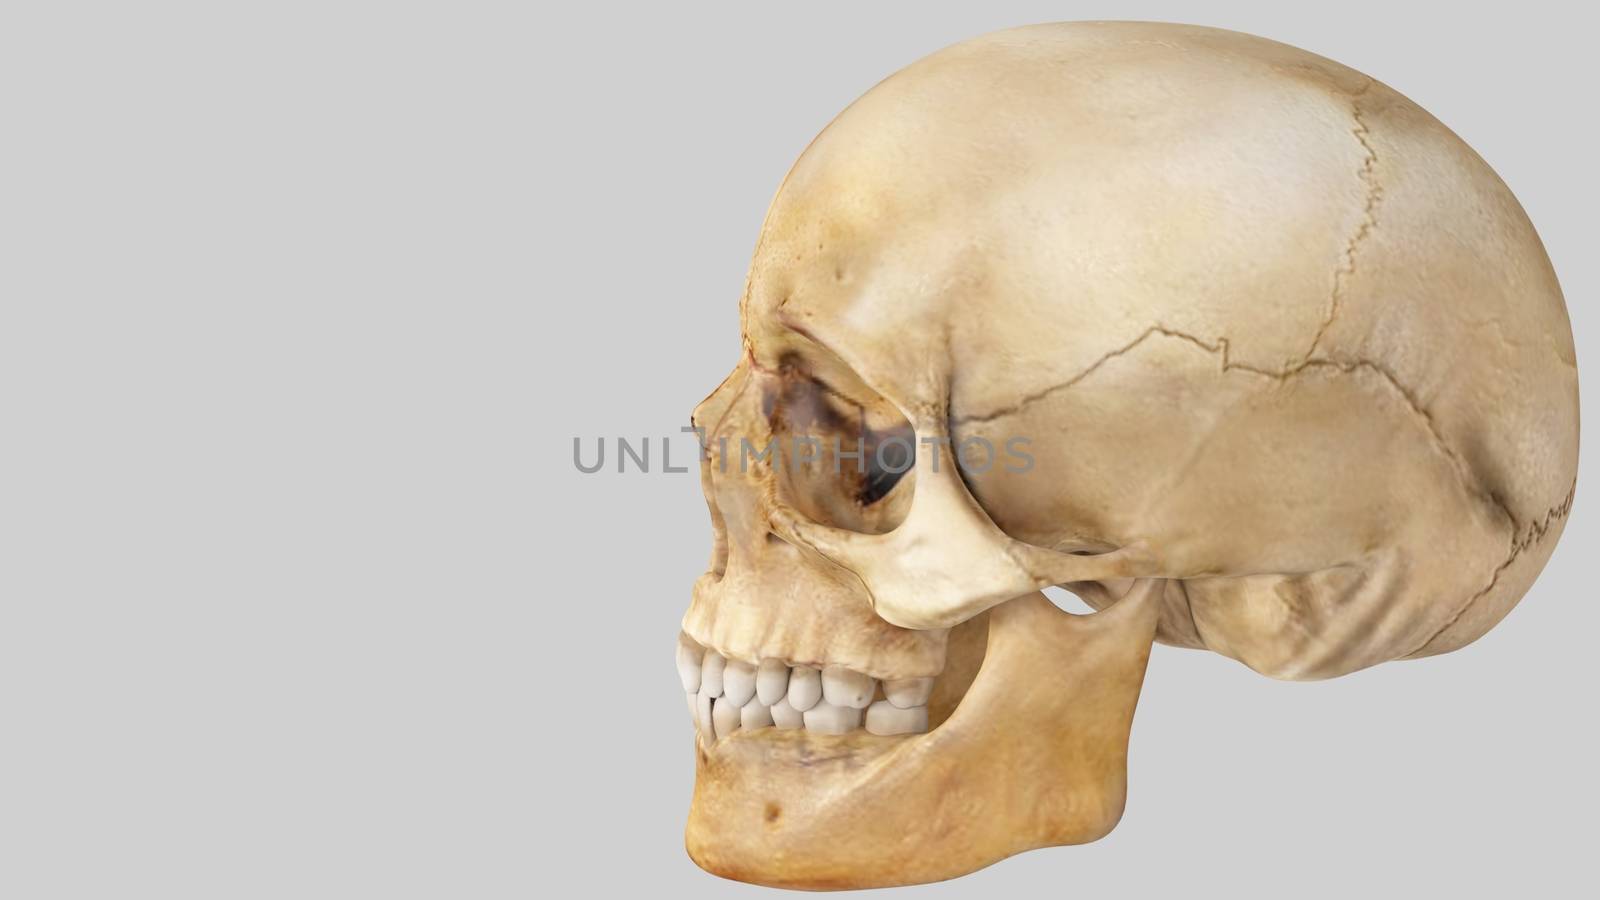 artifical human skull on white background, skull